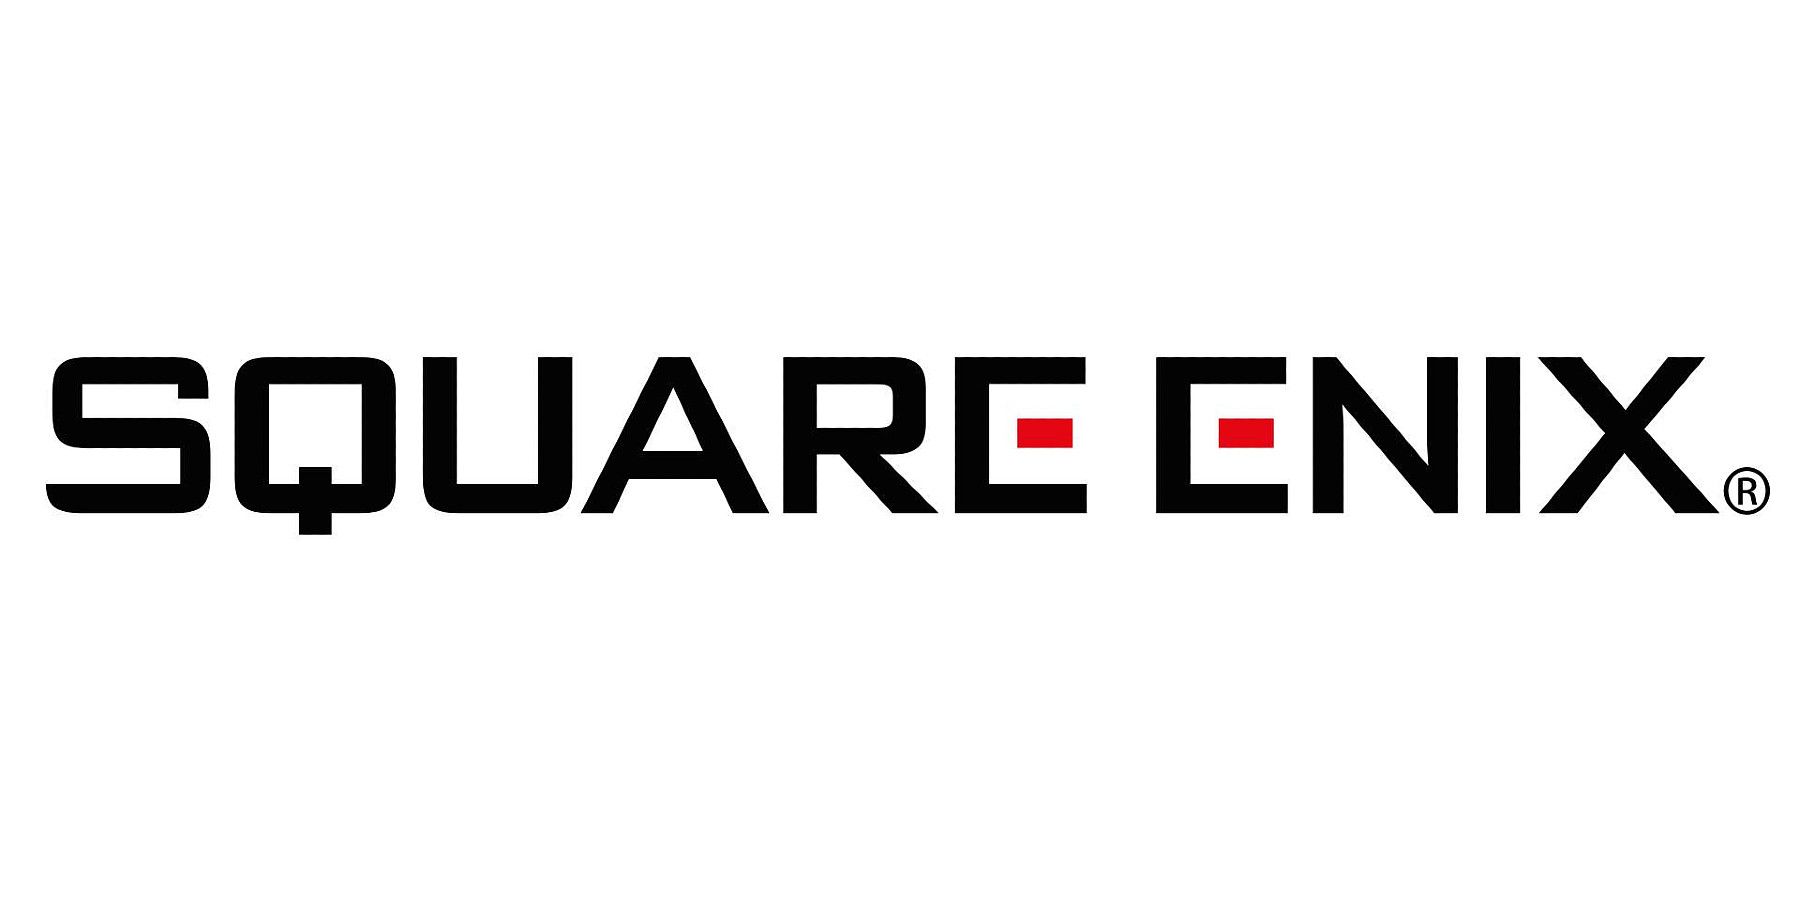 square enix trademark